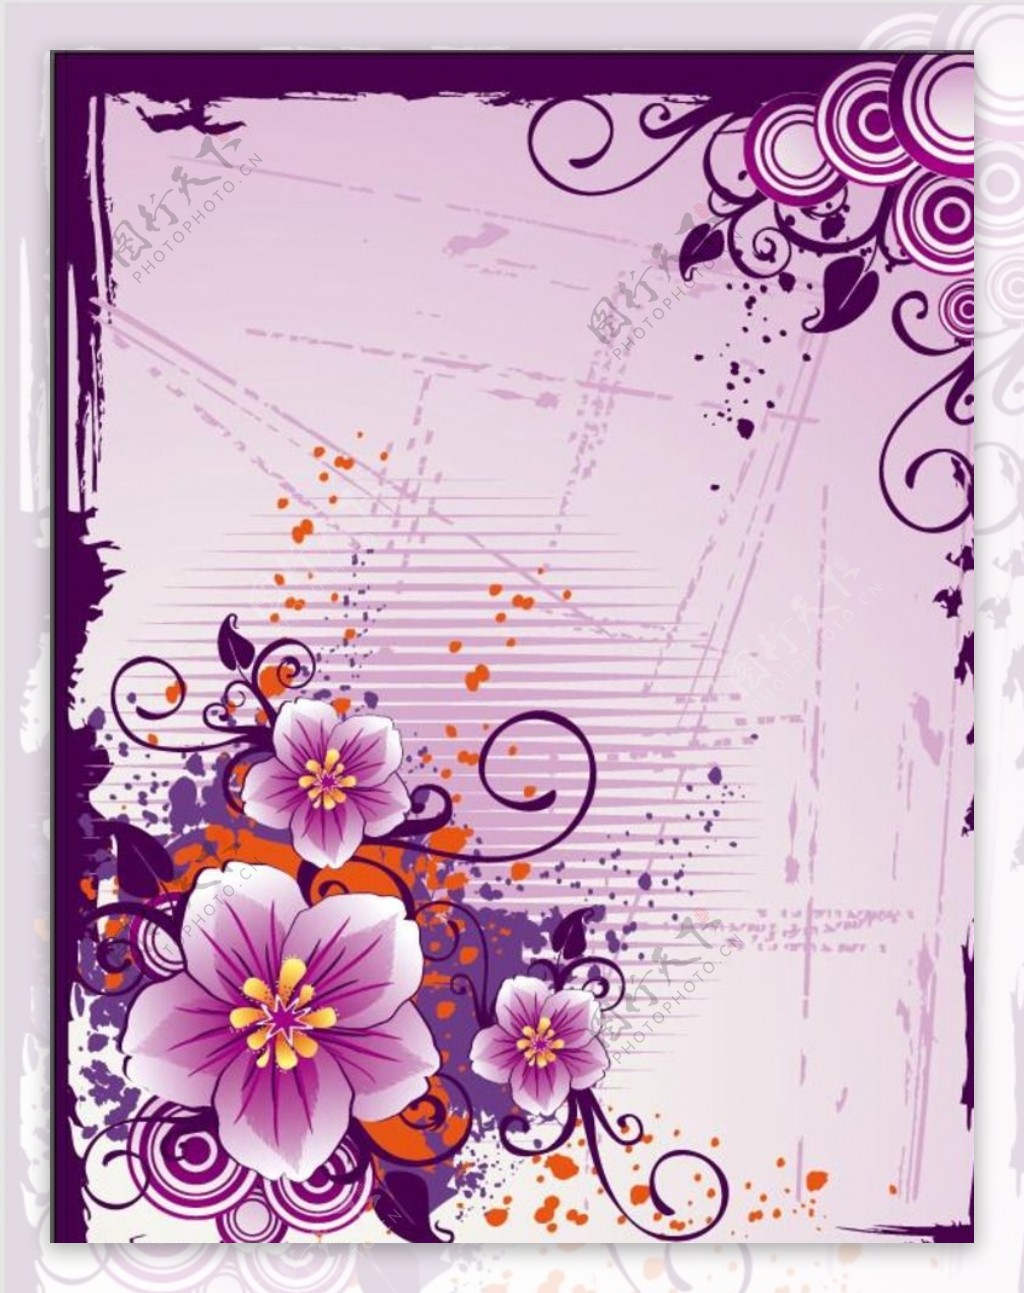 紫色花纹信纸矢量素材